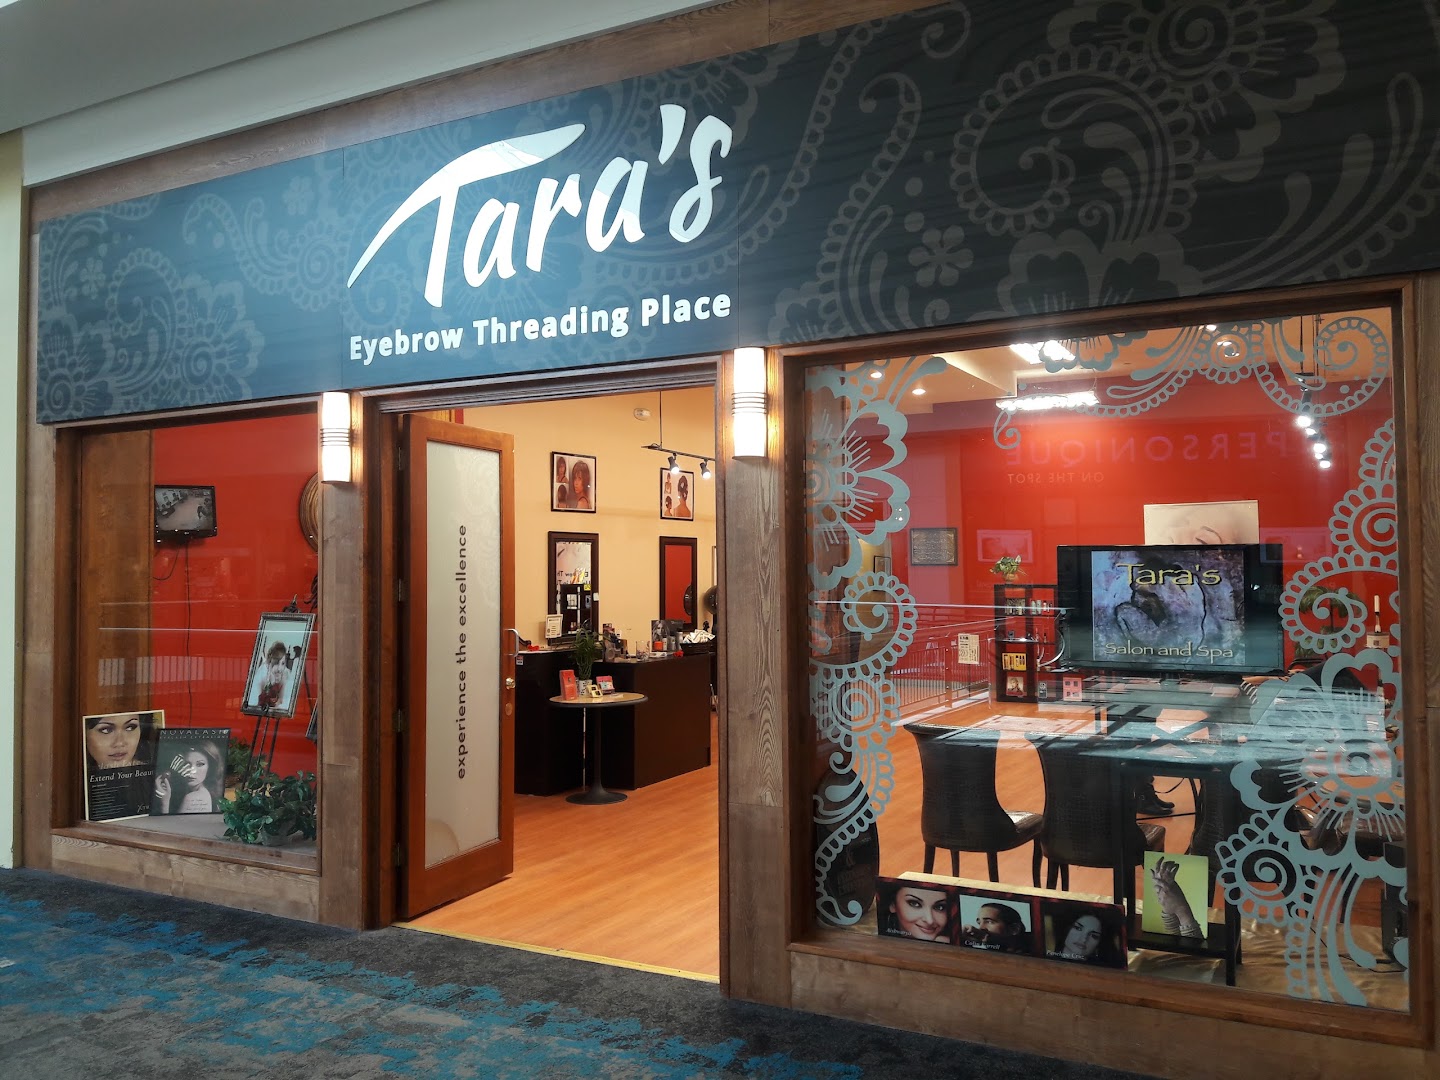 Tara's Salon & Spa